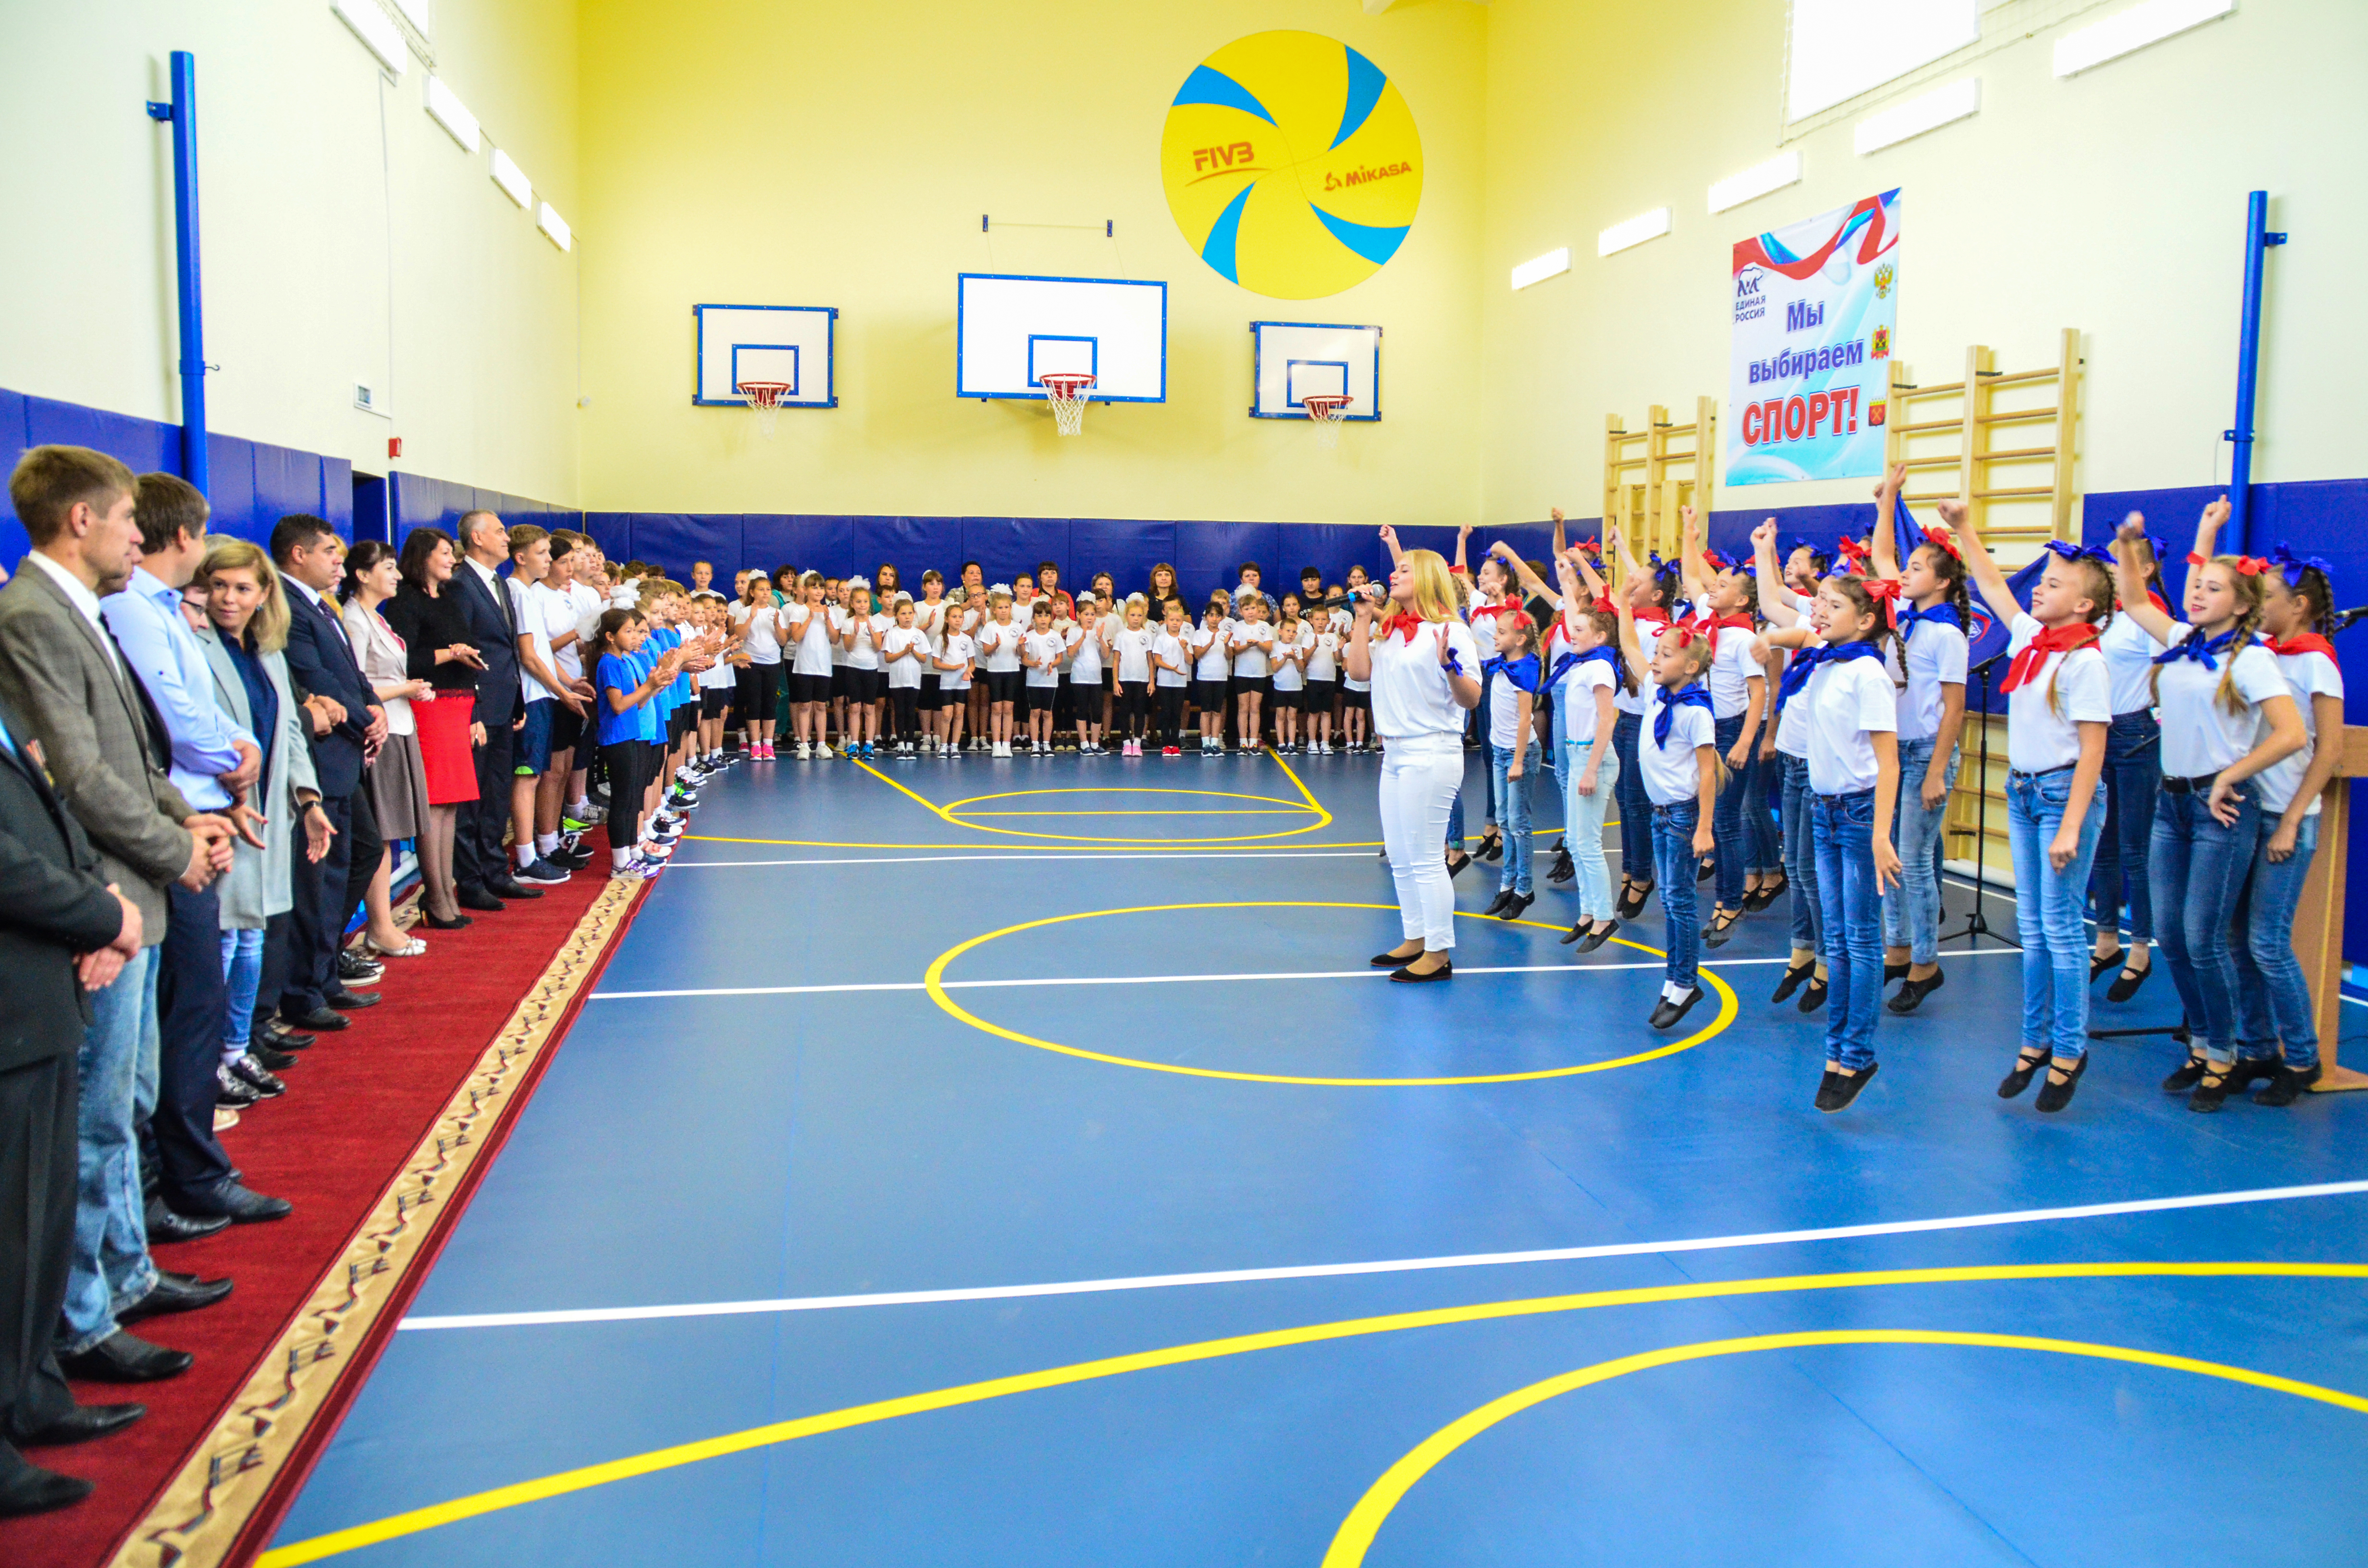 6 сентября введен в эксплуатацию спортивный зал в Малосалаирской средней общеобразовательной школе Гурьевского района